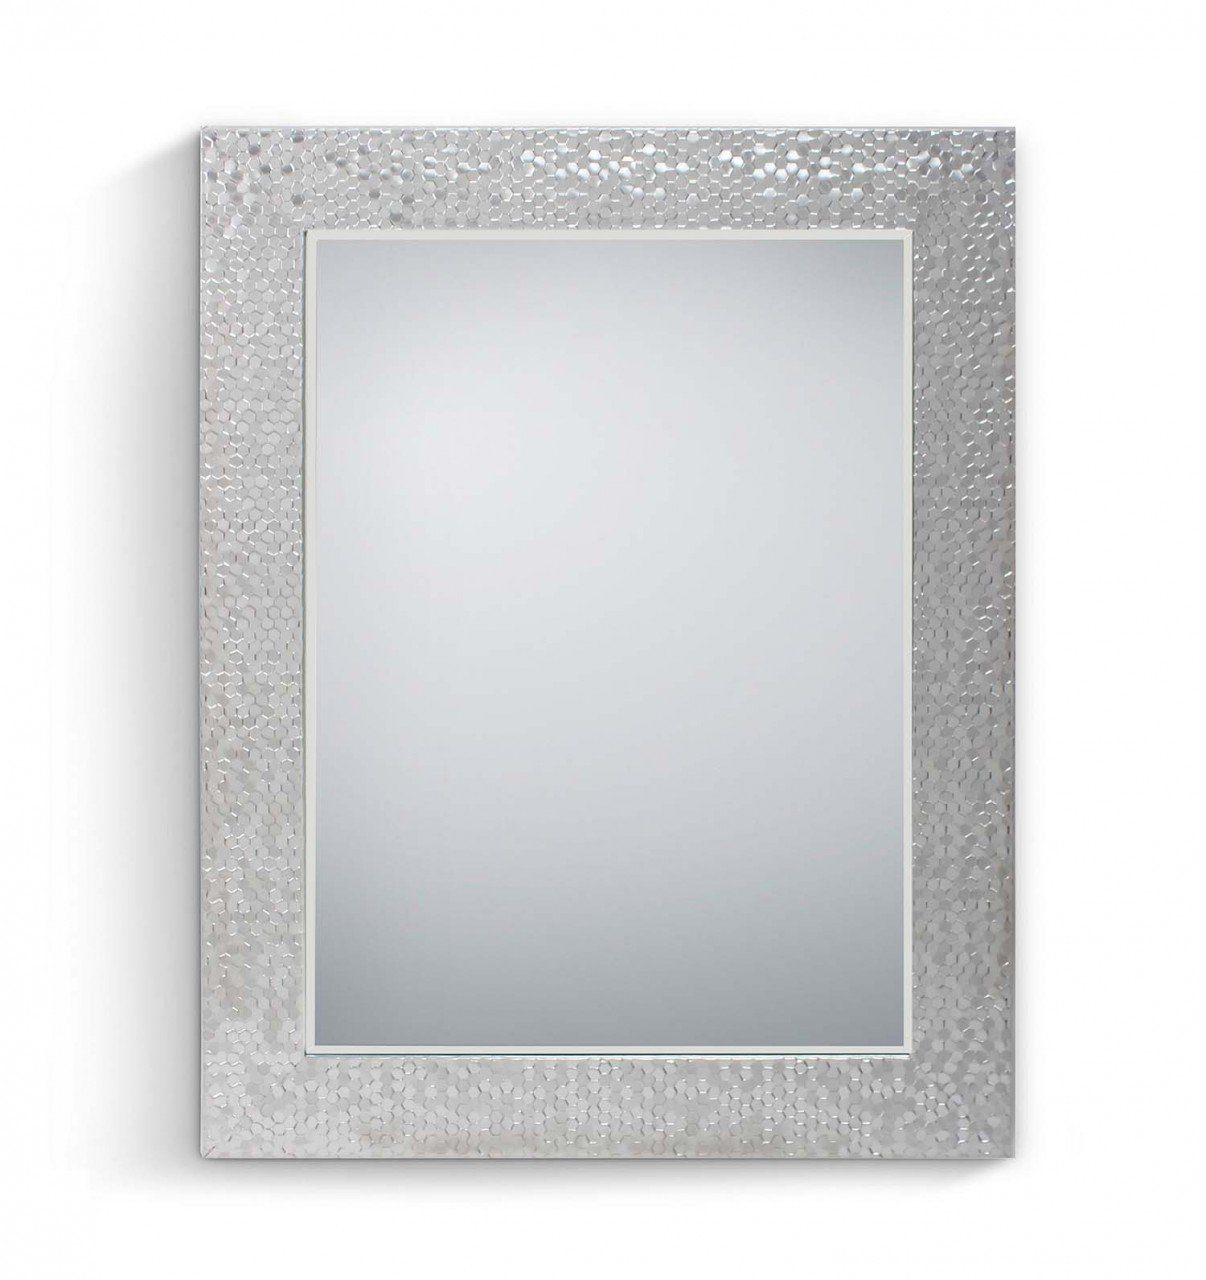 MIRRORS AND MORE Spiegel Alessia Rahmenspiegel Silber silberfarben